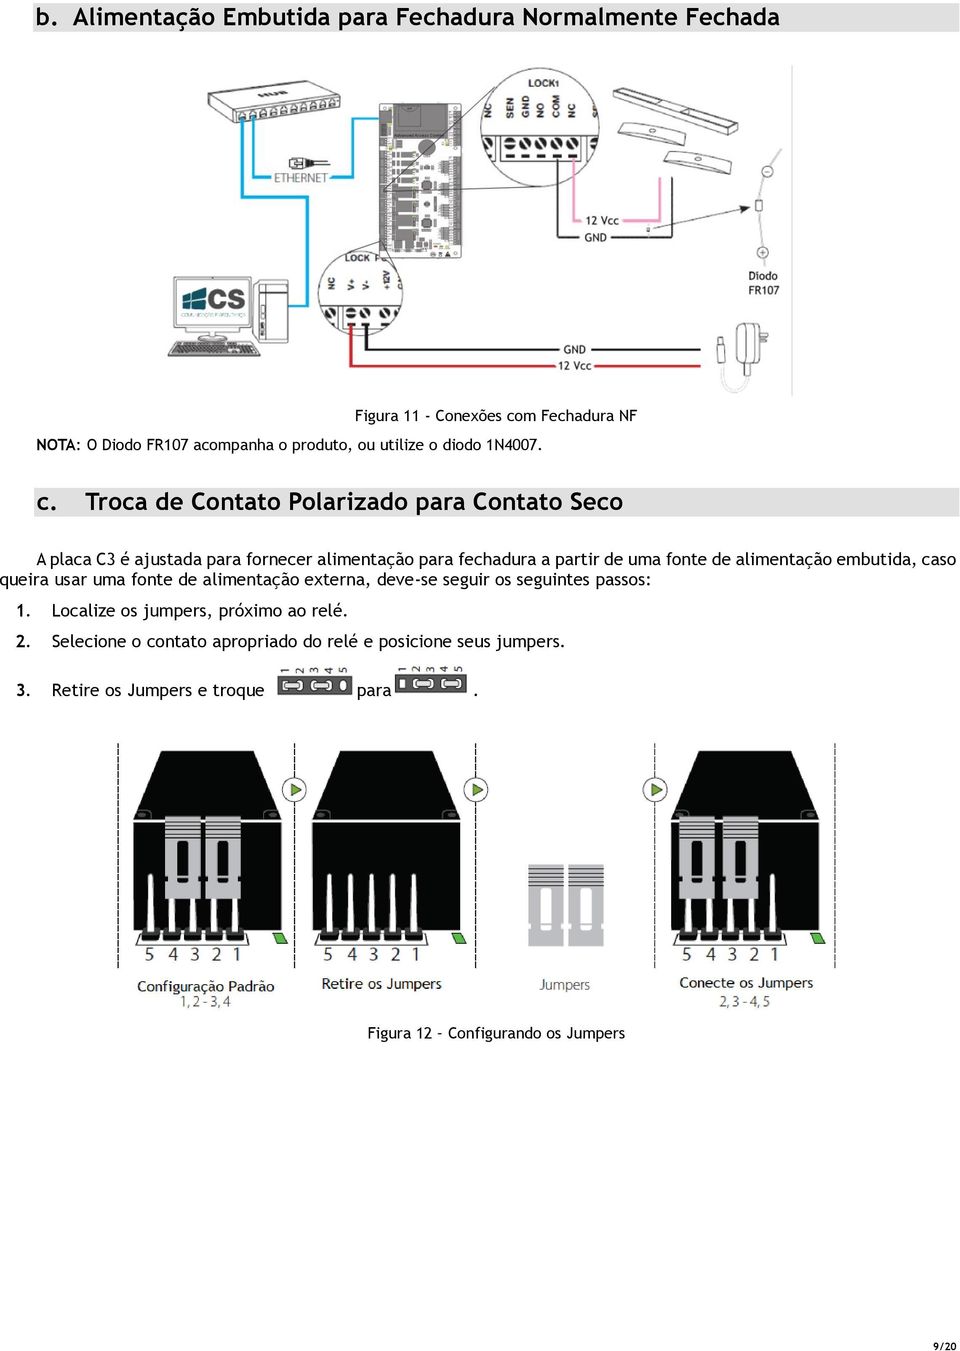 Troca de Contato Polarizado para Contato Seco A placa C3 é ajustada para fornecer alimentação para fechadura a partir de uma fonte de alimentação